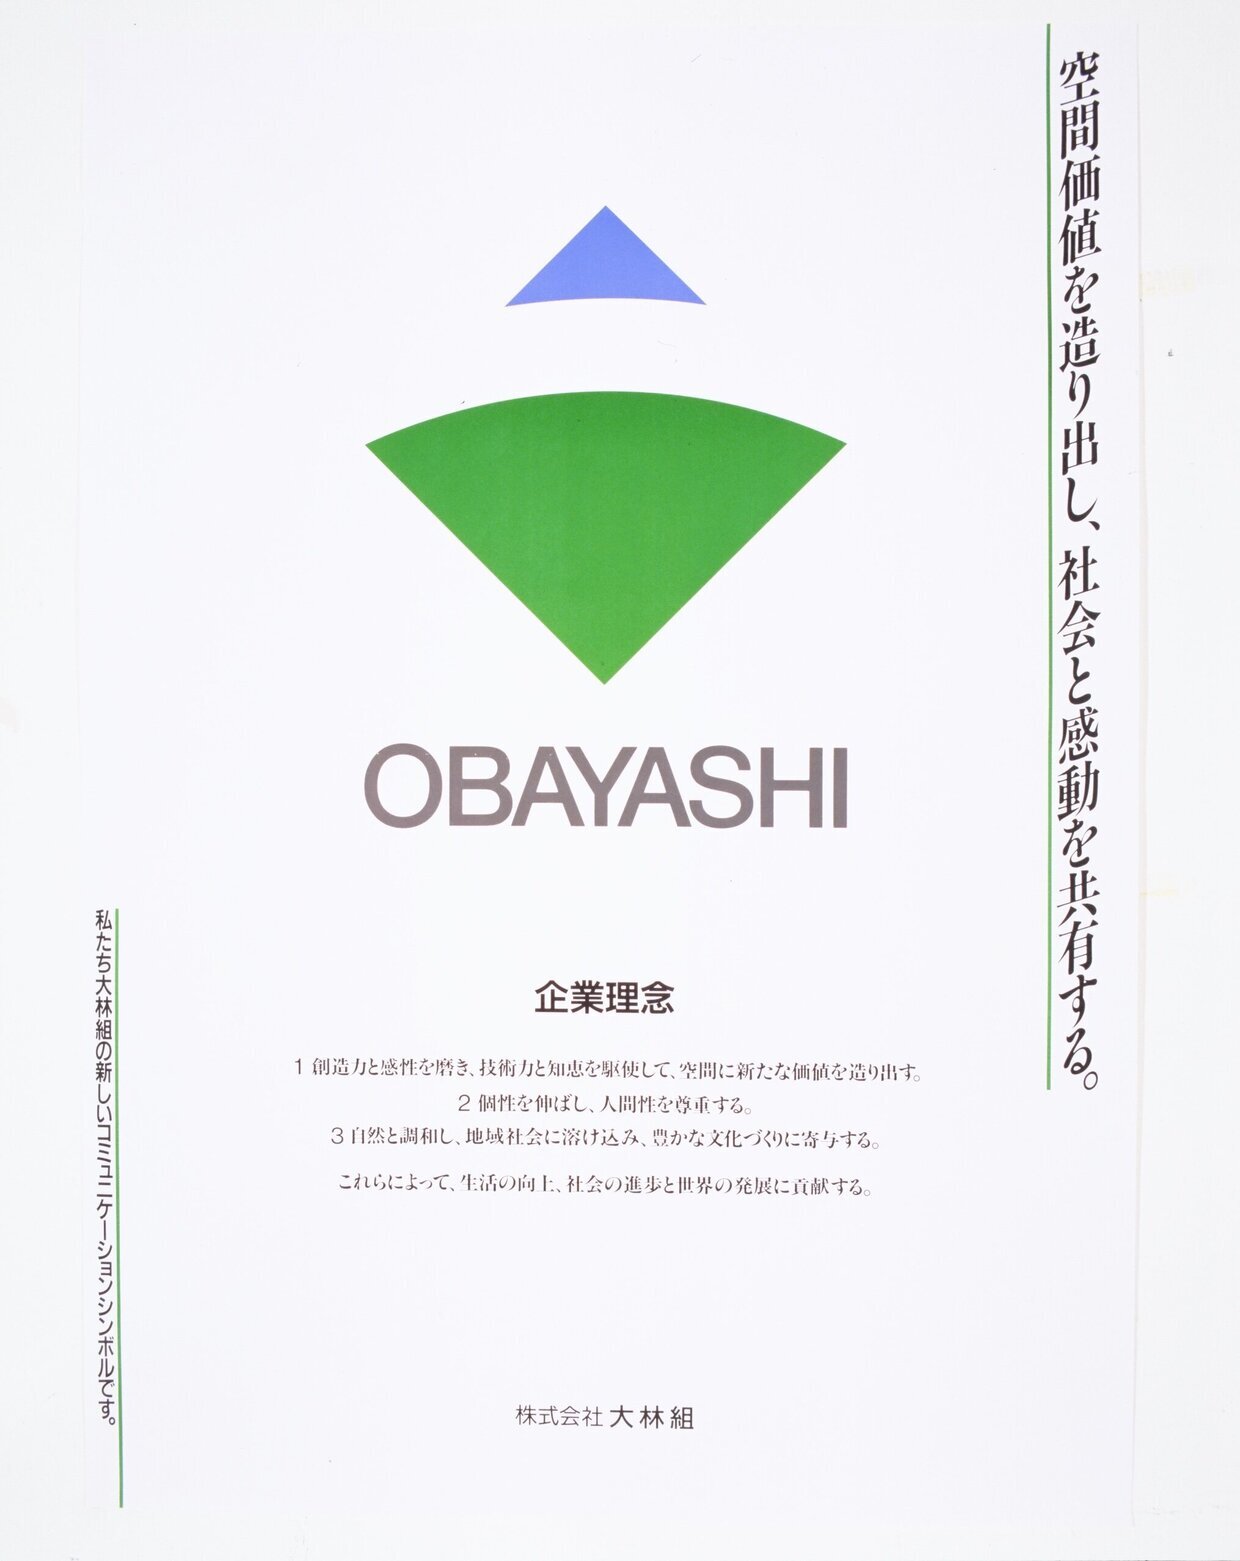 Poster of Obayashi Philosophy